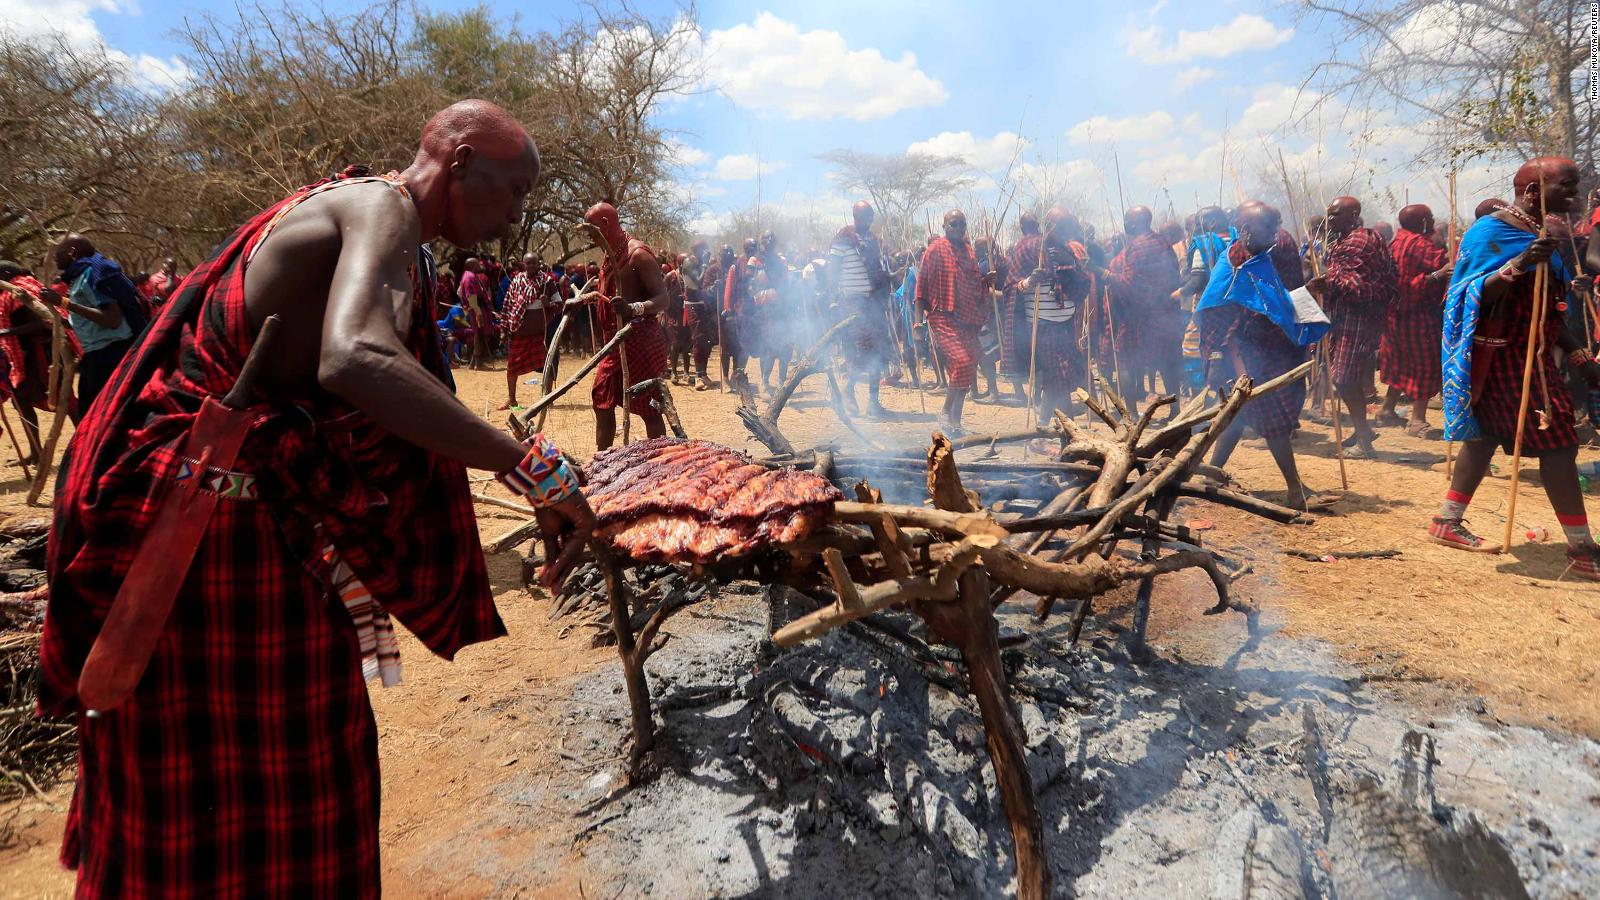 200924151029 02 Maasai Ceremony 0923 Full 169 